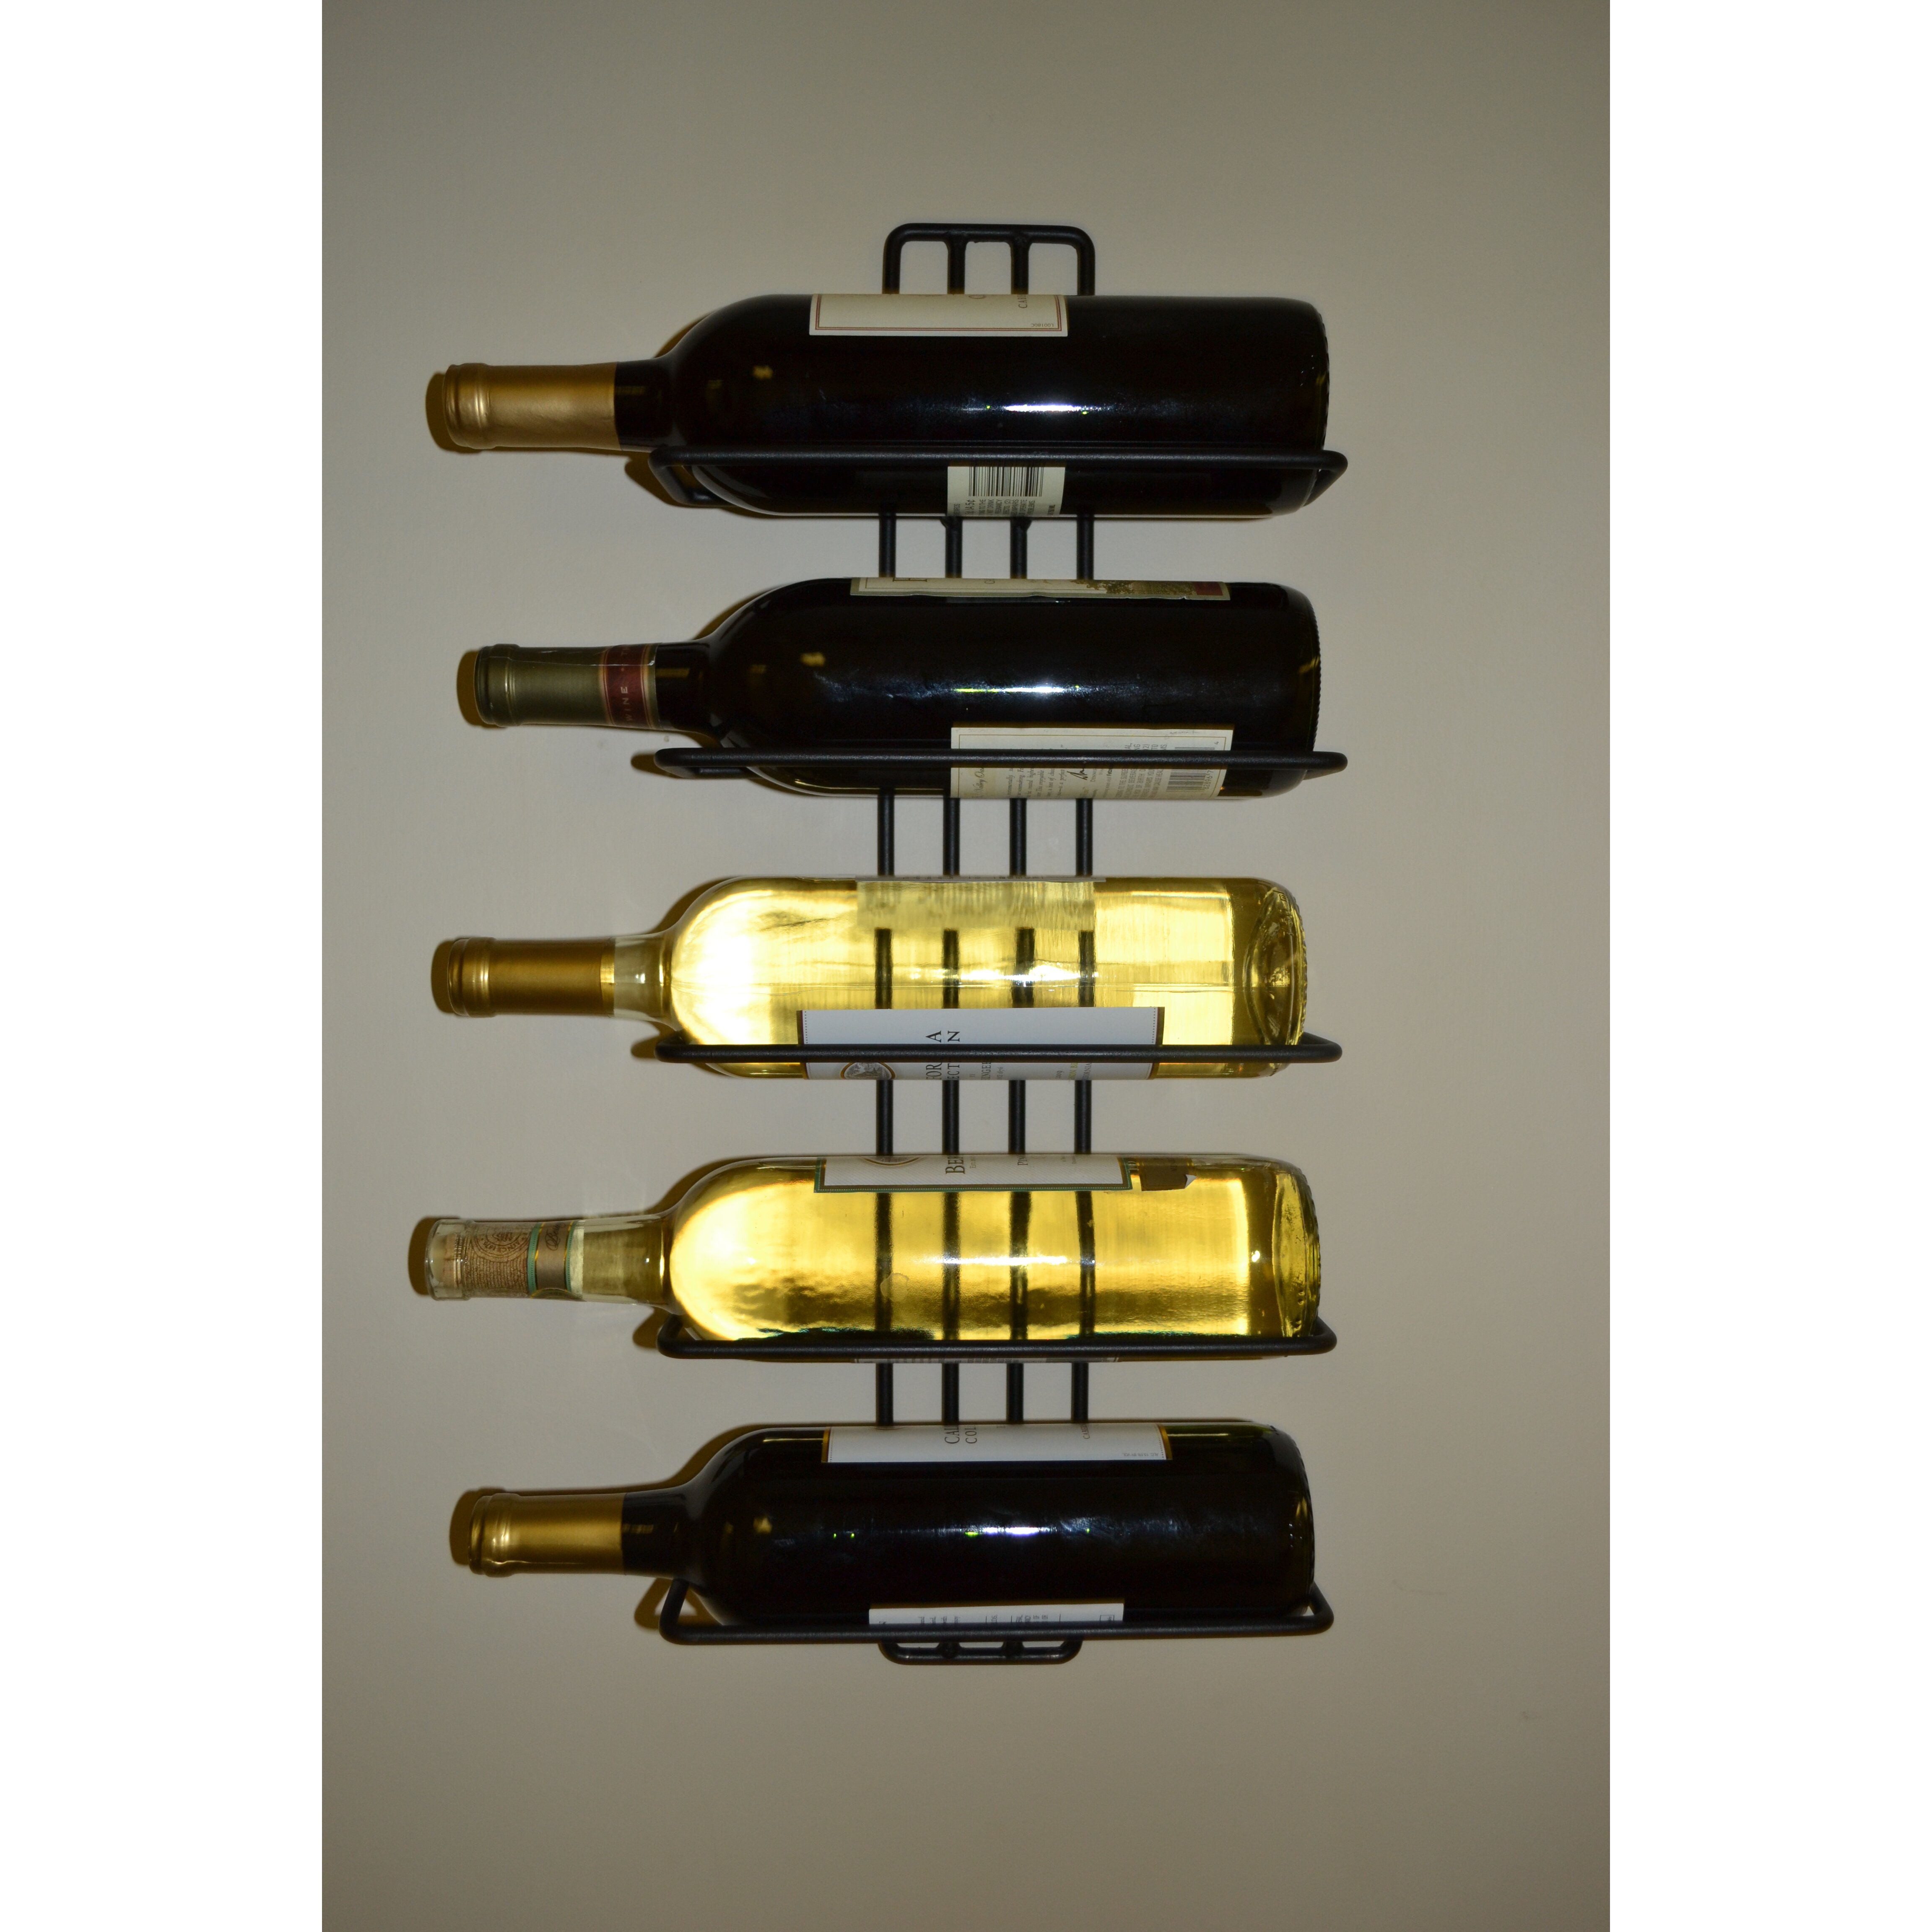 J & J Wire 5 Bottle Wall Mounted Wine Rack & Reviews Wayfair